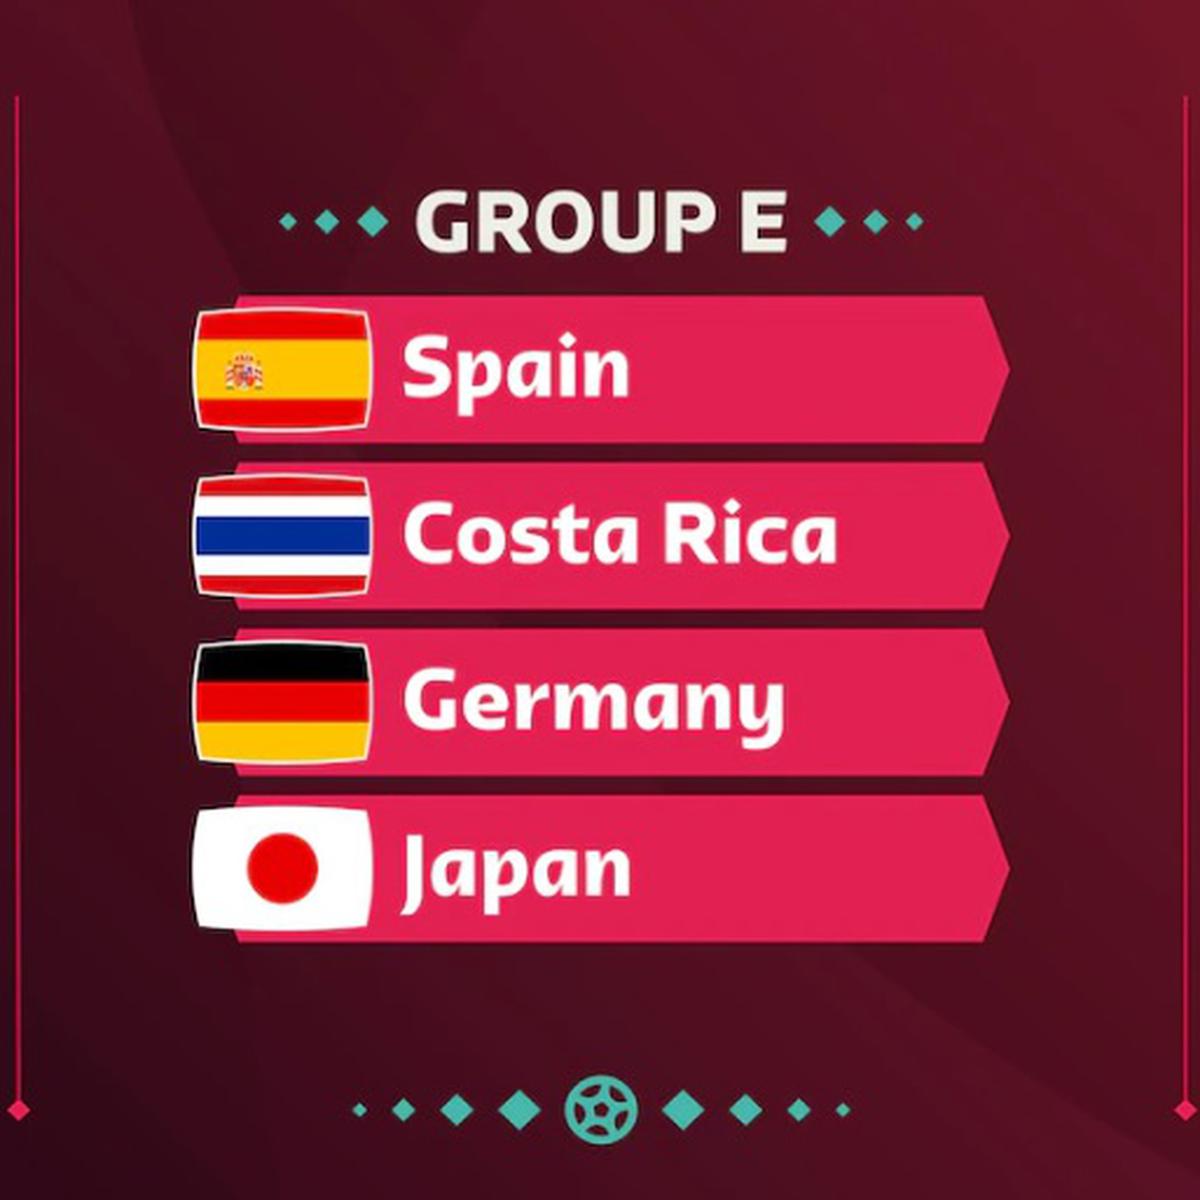 IFA7 - Así quedo la Tabla por grupos del Mundial de Clubes